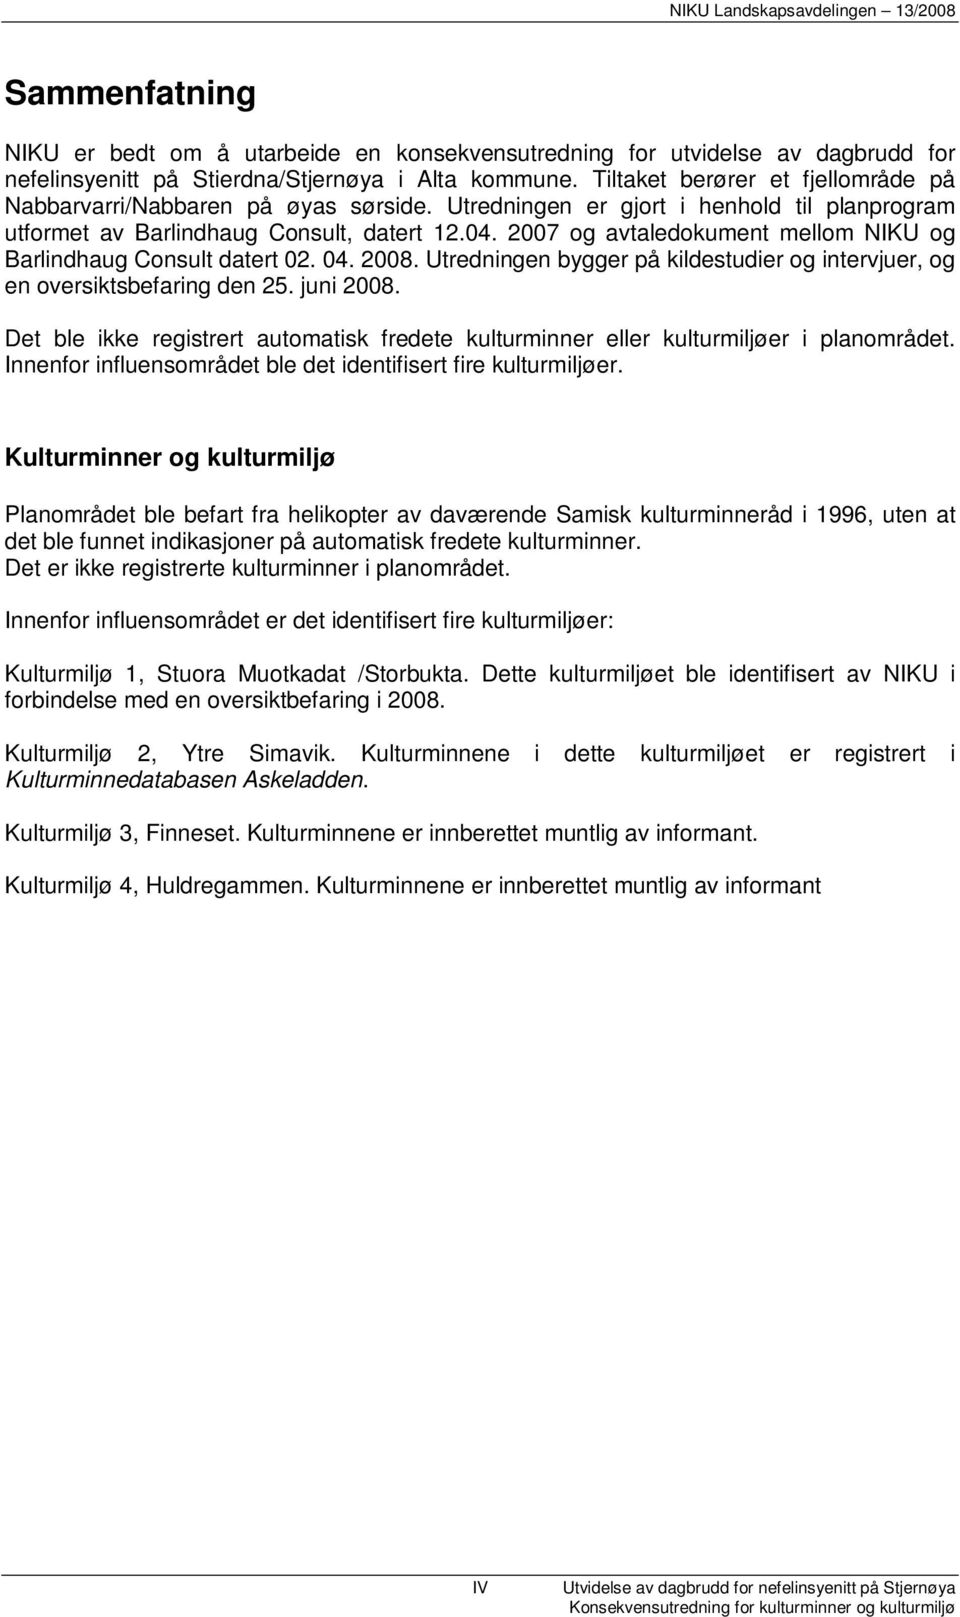 2007 og avtaledokument mellom NIKU og Barlindhaug Consult datert 02. 04. 2008. Utredningen bygger på kildestudier og intervjuer, og en oversiktsbefaring den 25. juni 2008.